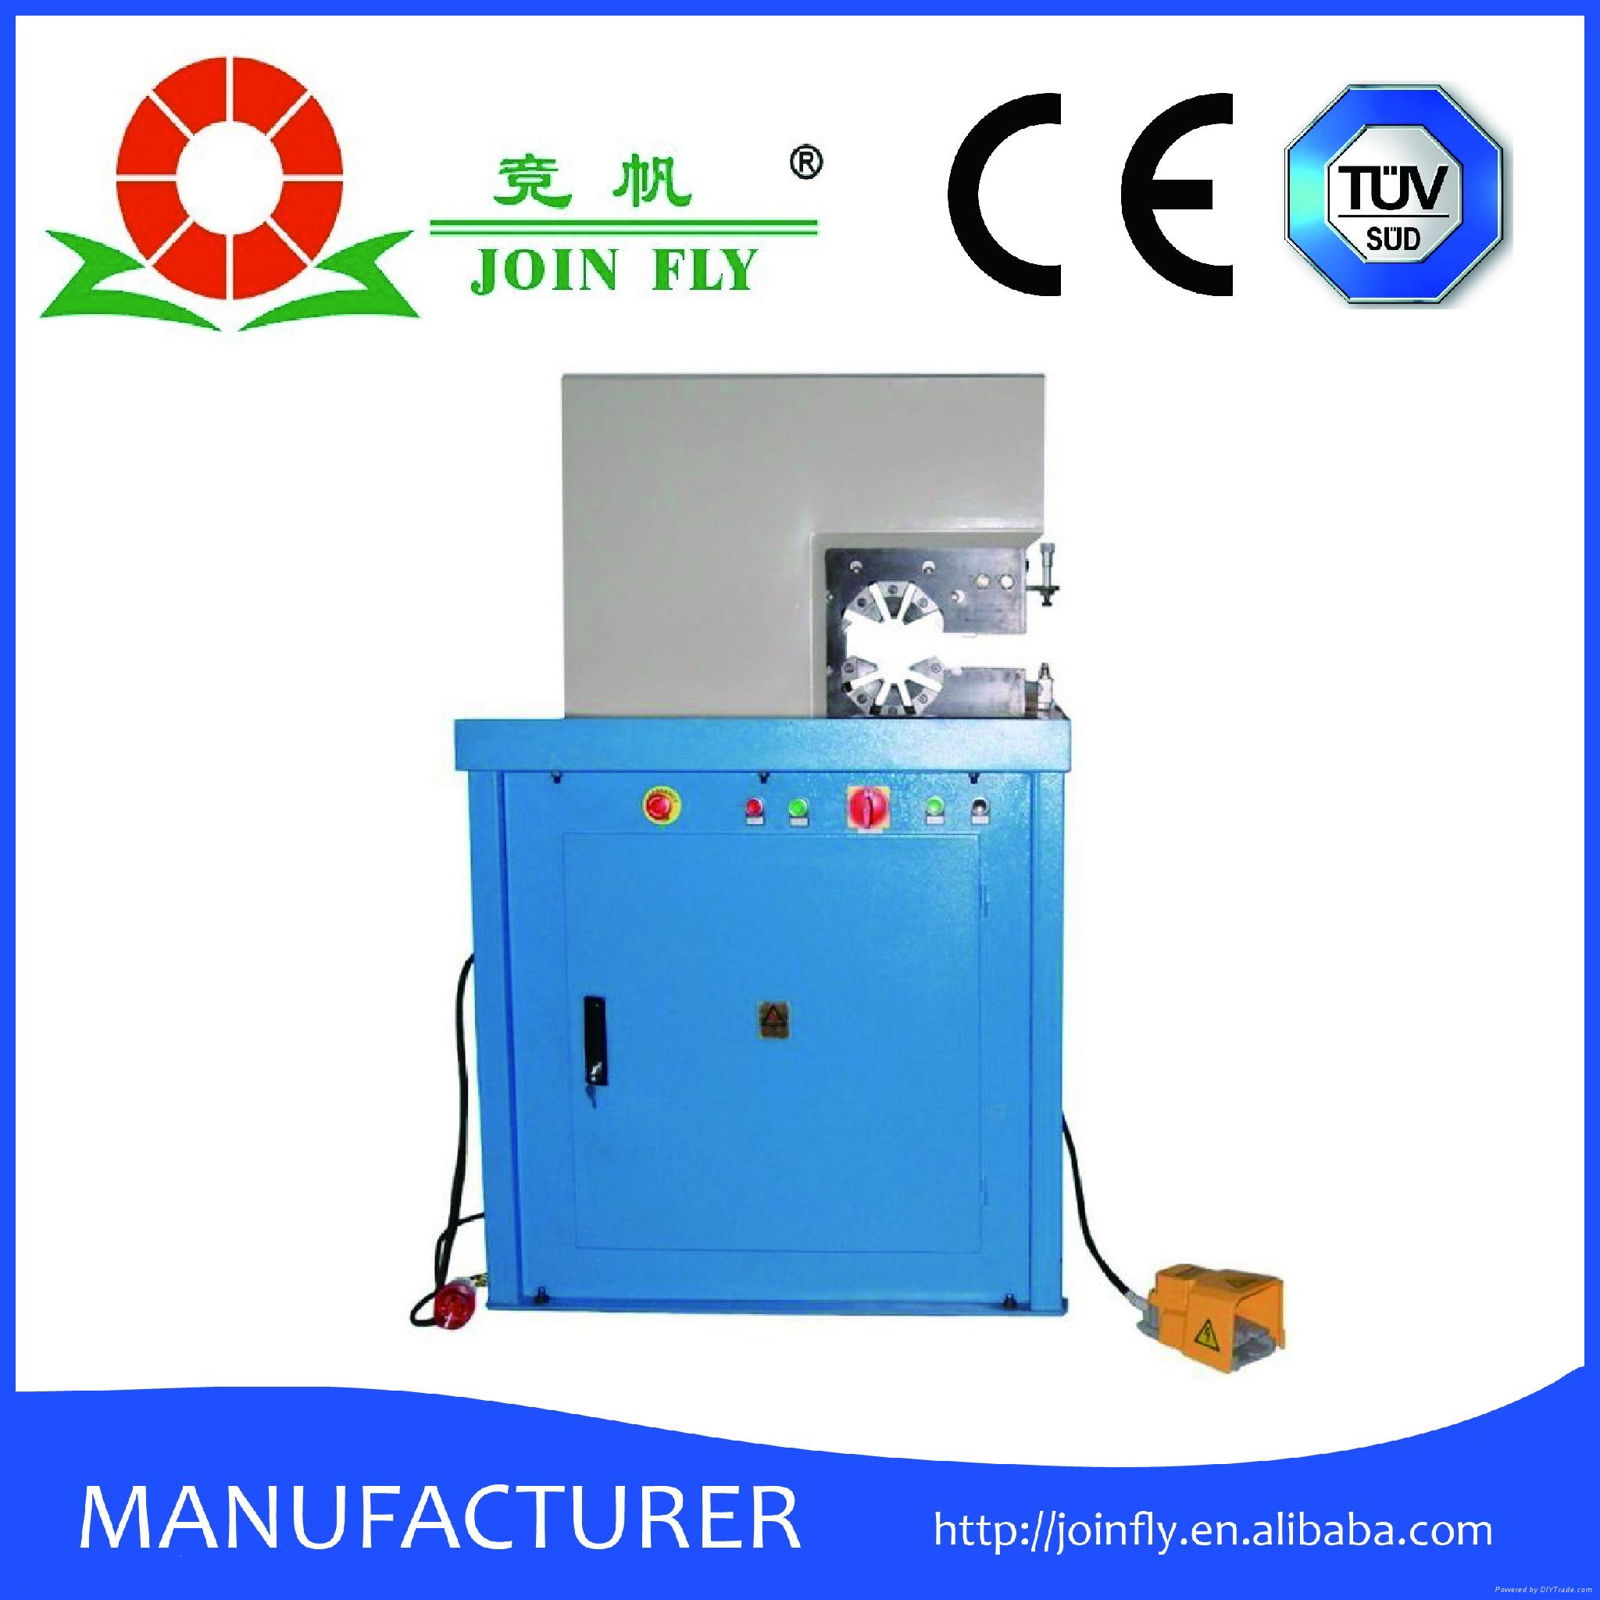 China Manufacturer hydraulic hose crimper machine